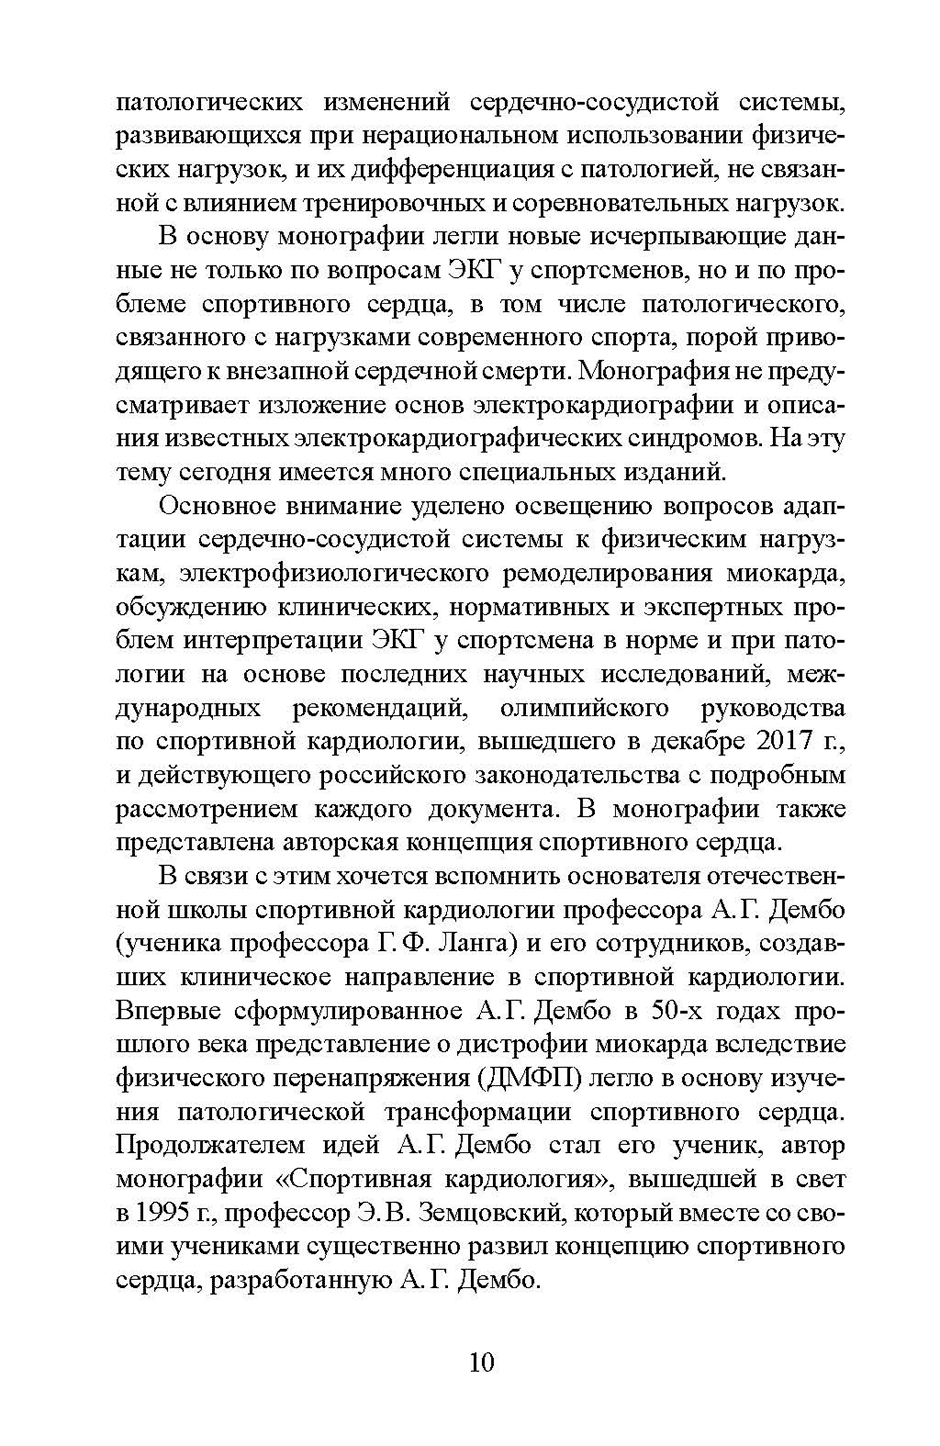 Пример страницы из книги "Клинические и экспертные вопросы электрокардиографии в спортивной медицине" - Е. А. Гаврилова